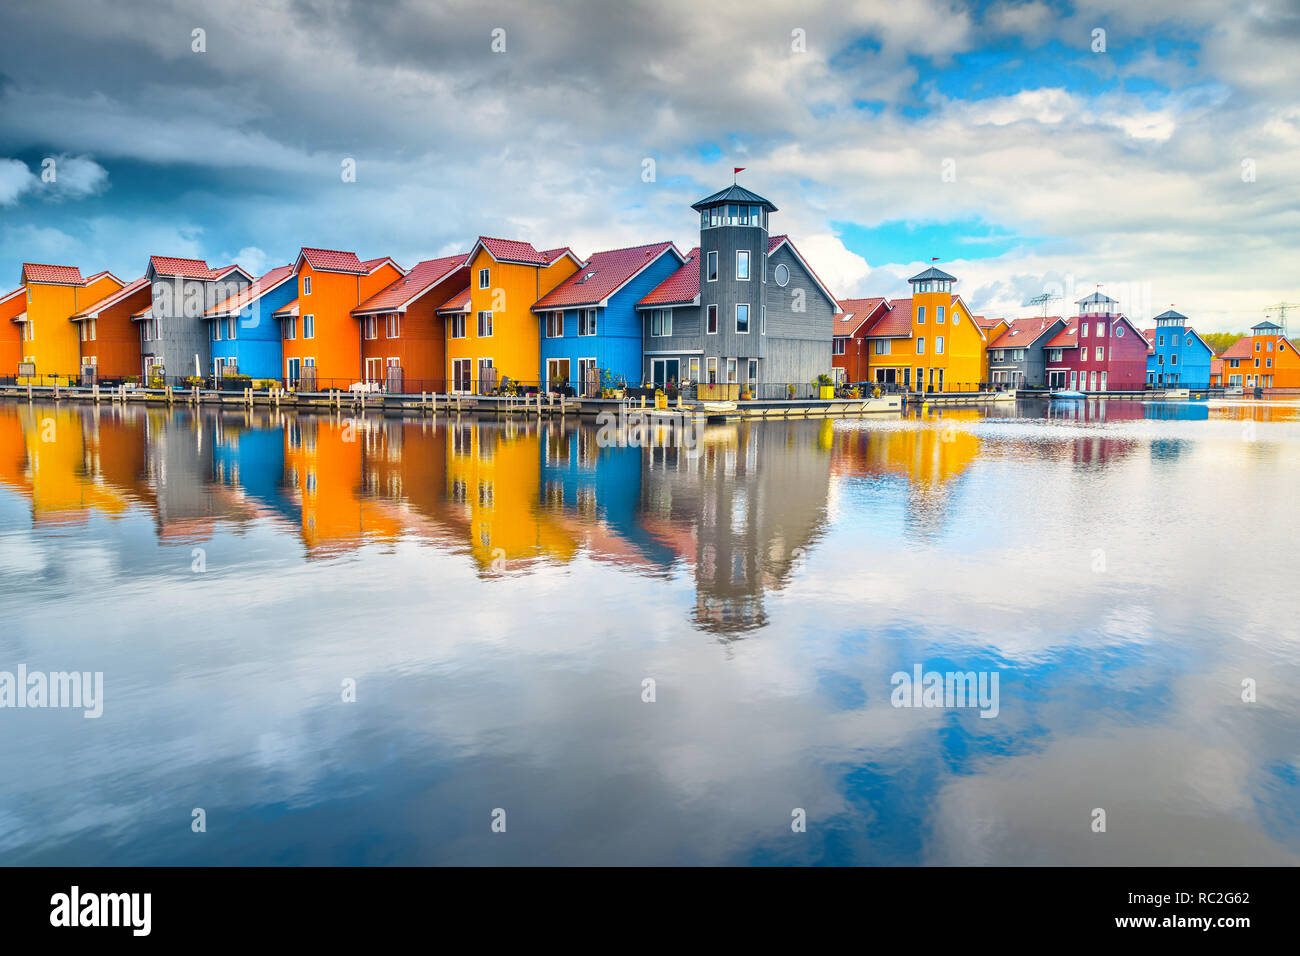 Touristique merveilleuse ville néerlandaise, célèbre Reitdiephaven avec rue colorée traditionnelle des maisons modernes sur l'eau, Groningen, Pays-Bas, Europe Banque D'Images